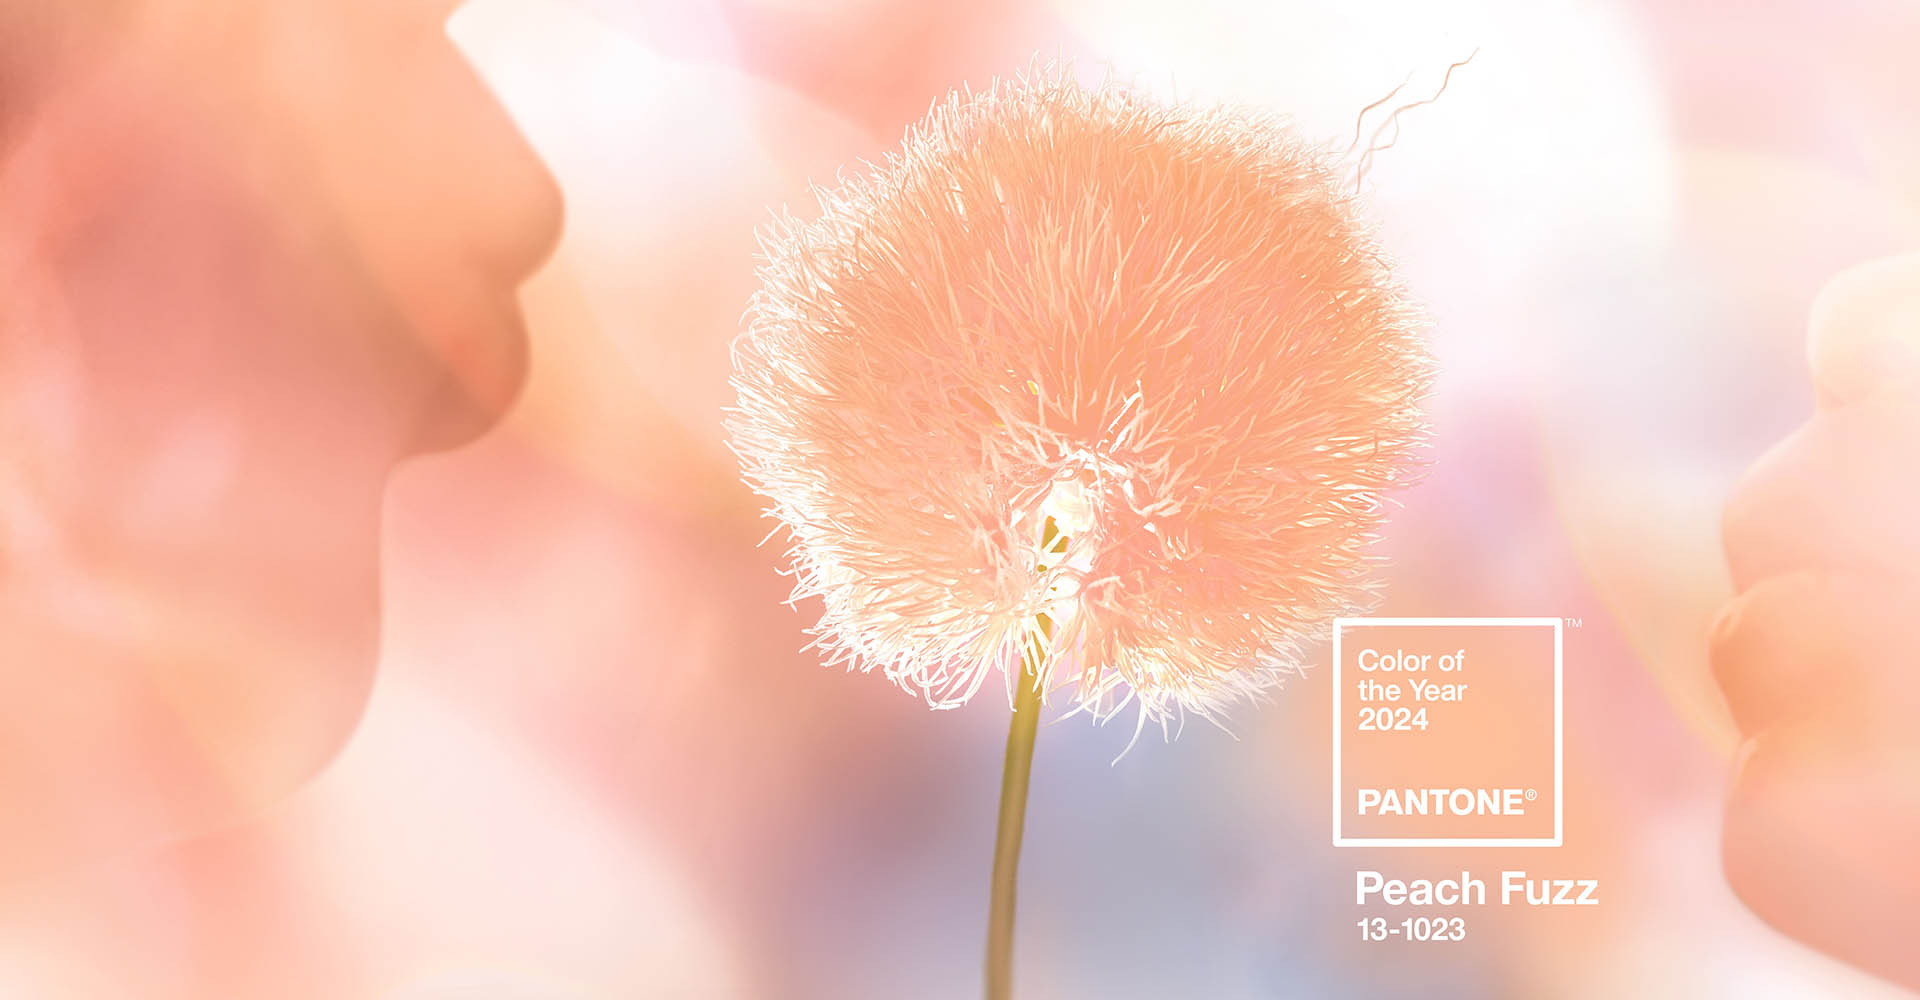 Между розовым и оранжевым - Pantone Color Institute назвал оттенком года цвет Peach Fuzz